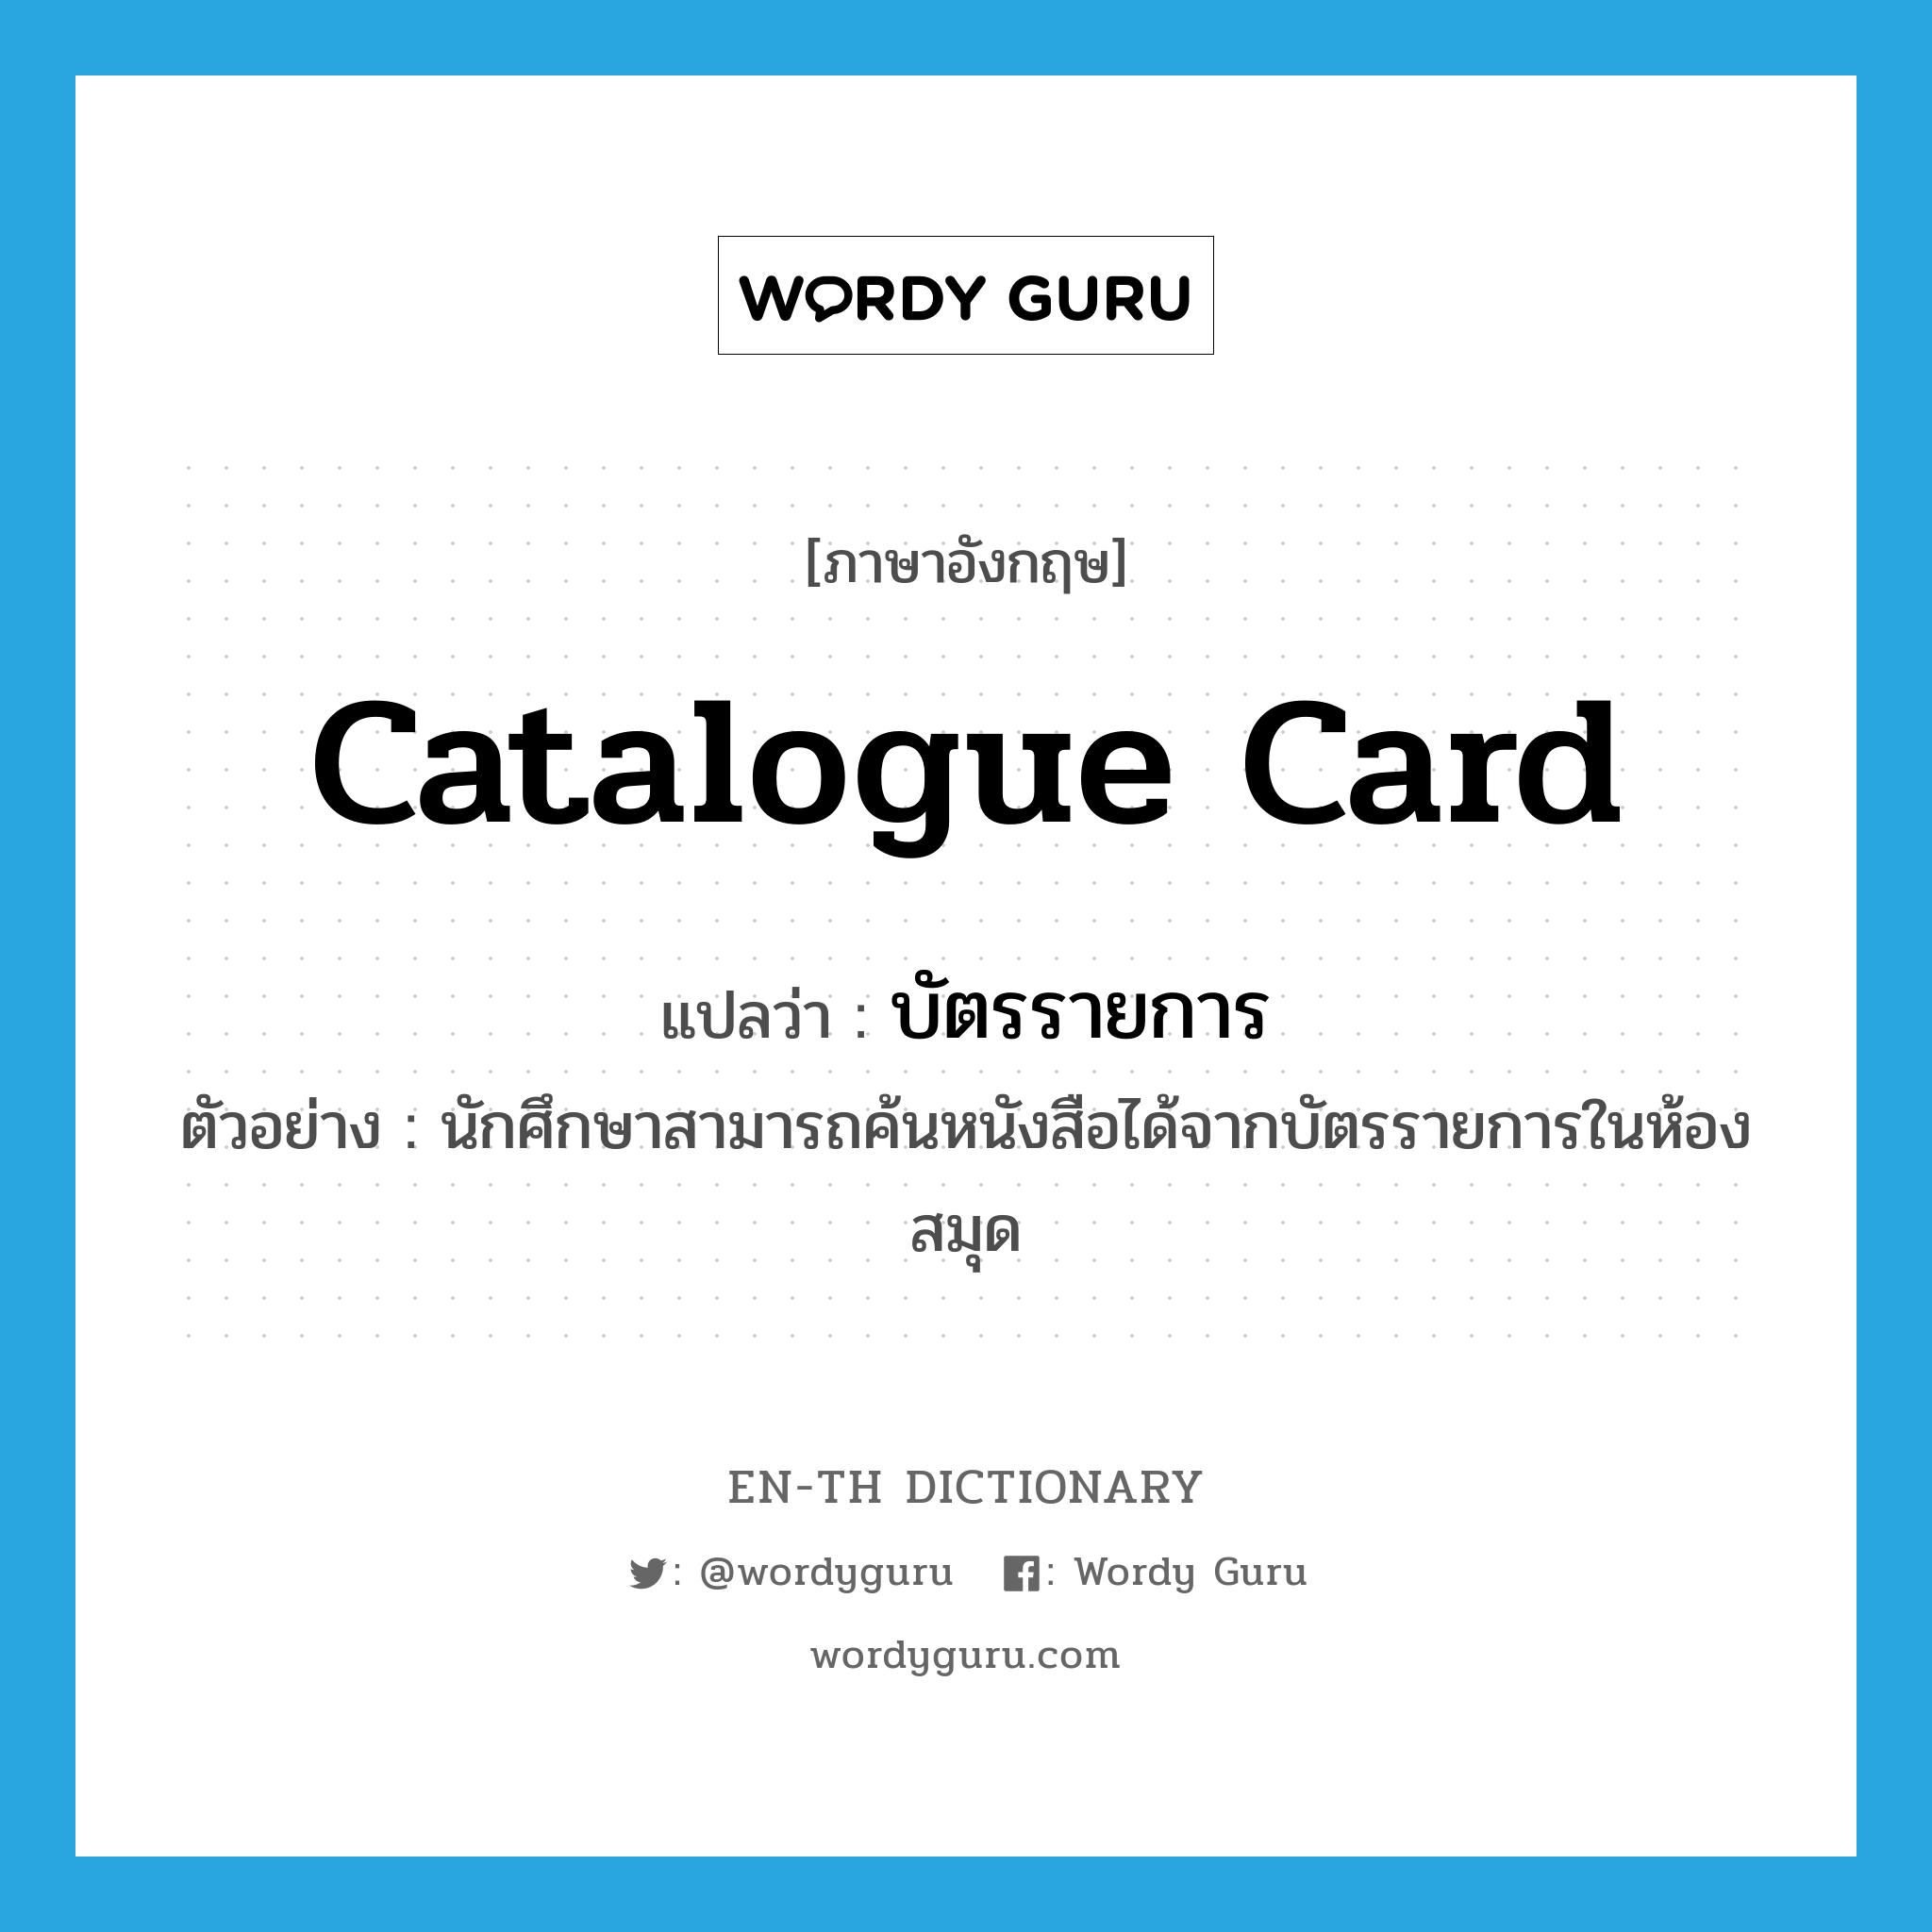 catalogue card แปลว่า?, คำศัพท์ภาษาอังกฤษ catalogue card แปลว่า บัตรรายการ ประเภท N ตัวอย่าง นักศึกษาสามารถค้นหนังสือได้จากบัตรรายการในห้องสมุด หมวด N